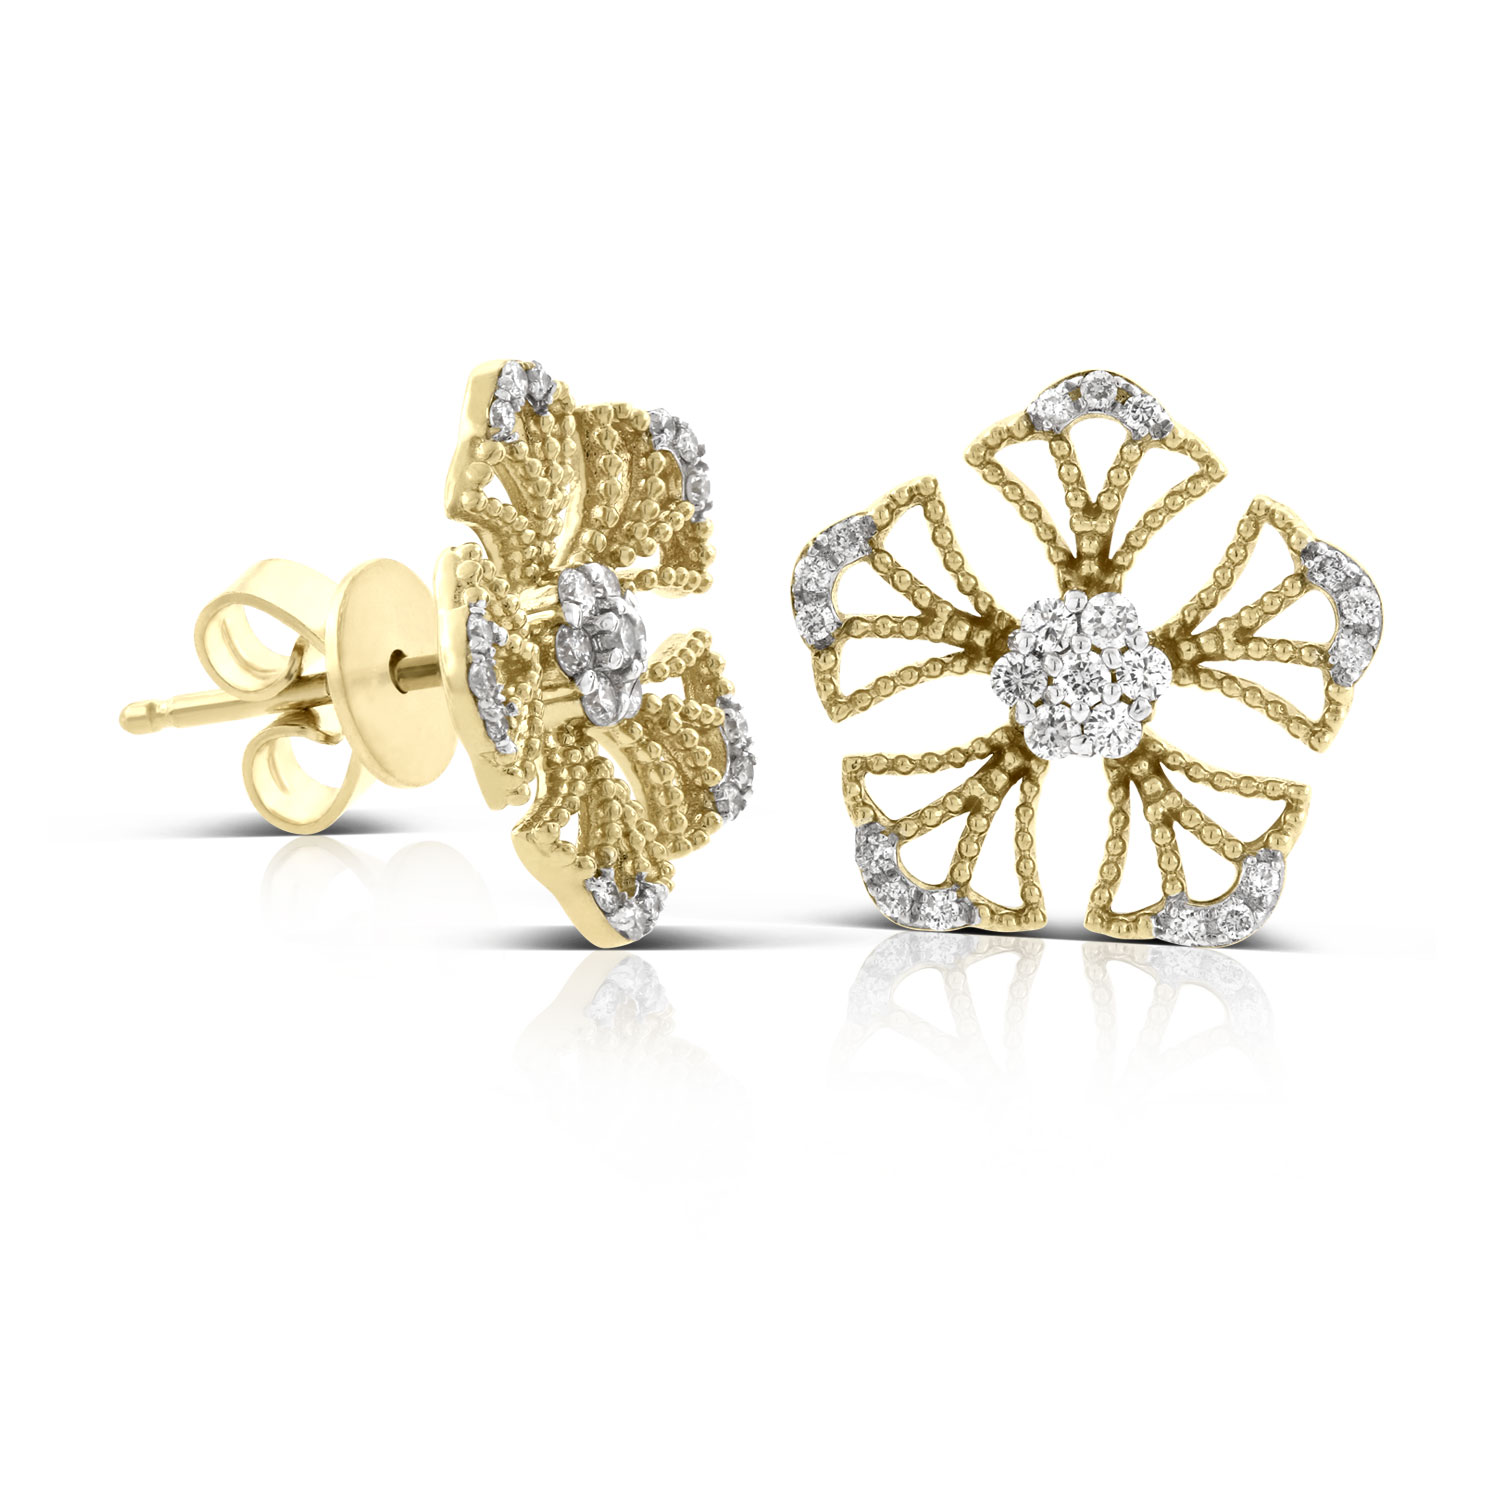 Floral Diamond Earrings 14K | Ben Bridge Jeweler